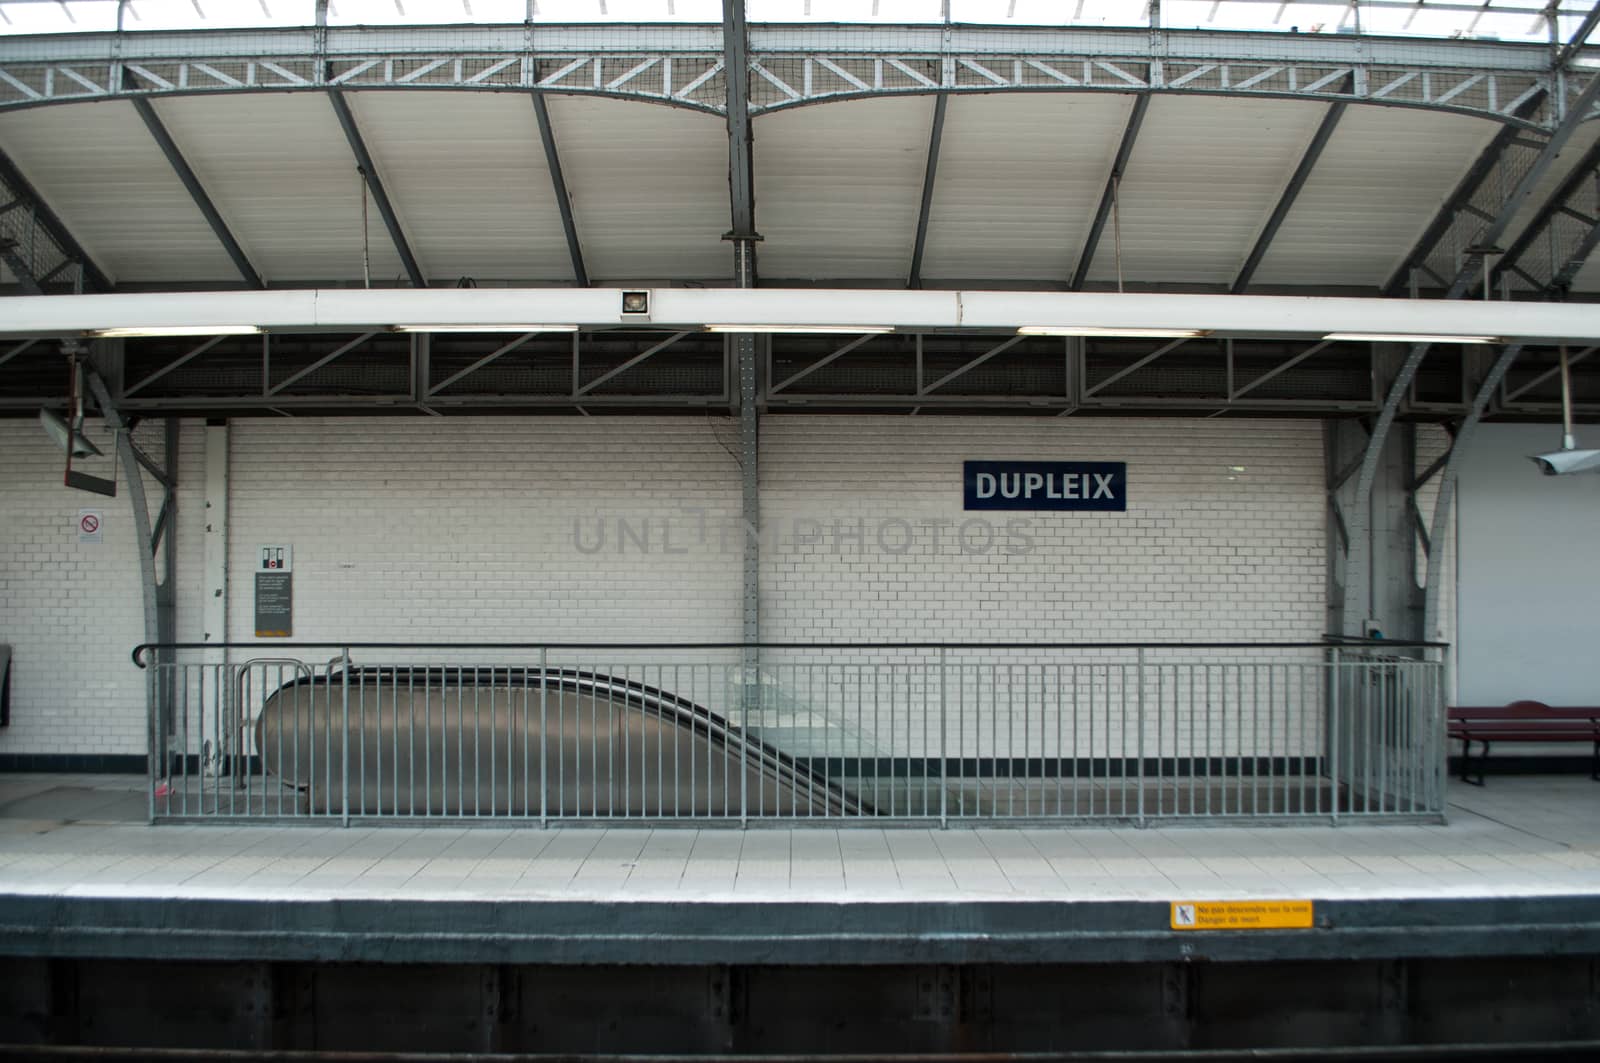 metropolitan station in Paris (Dupleix) by NeydtStock